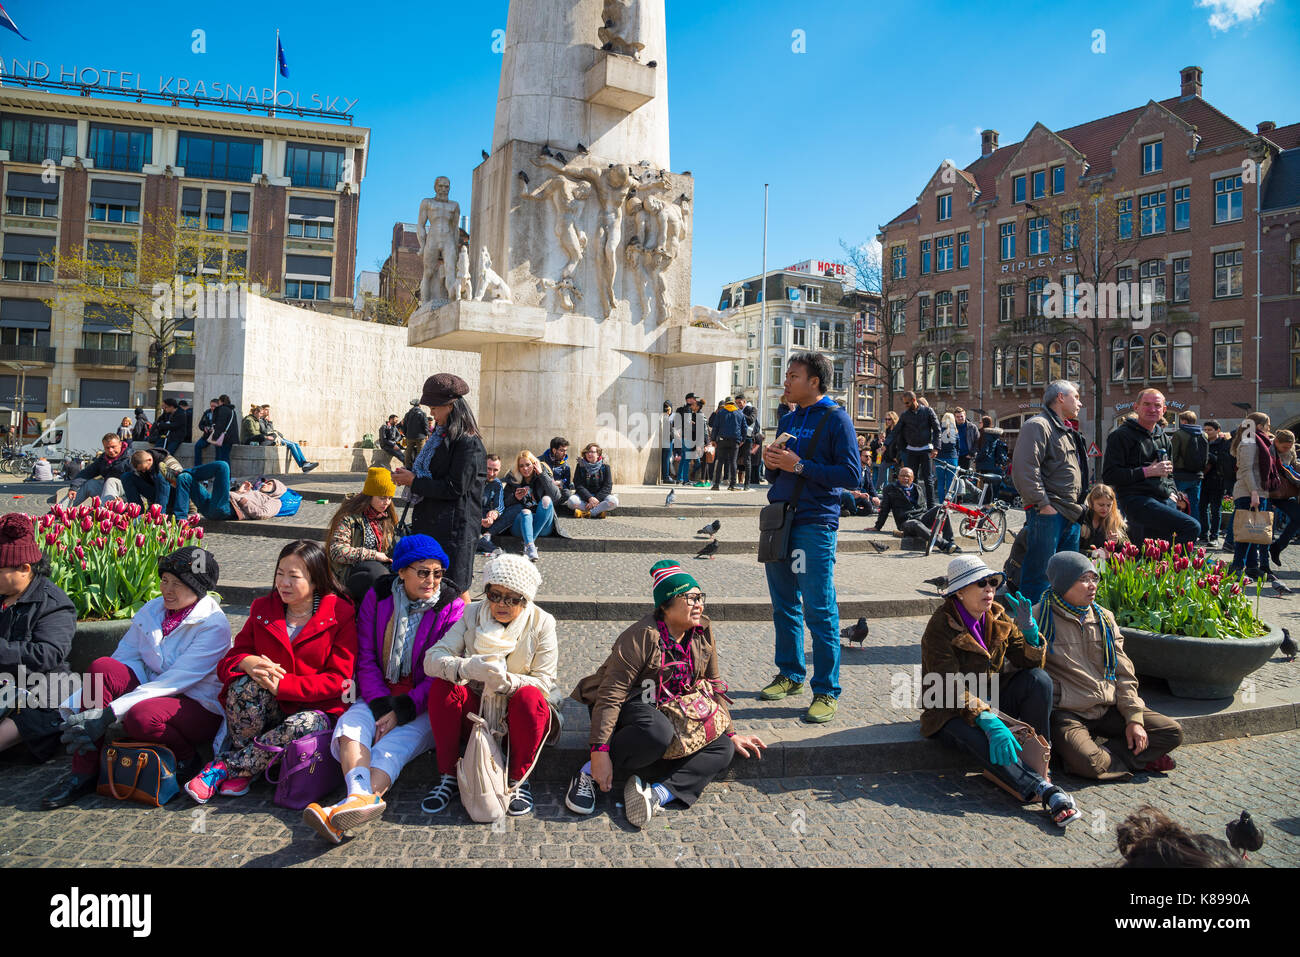 Amsterdam, Holanda - abril 19, 2017: los turistas en la plaza Dam en Amsterdam, Países Bajos. El lugar es el centro histórico de la ciudad. Foto de stock